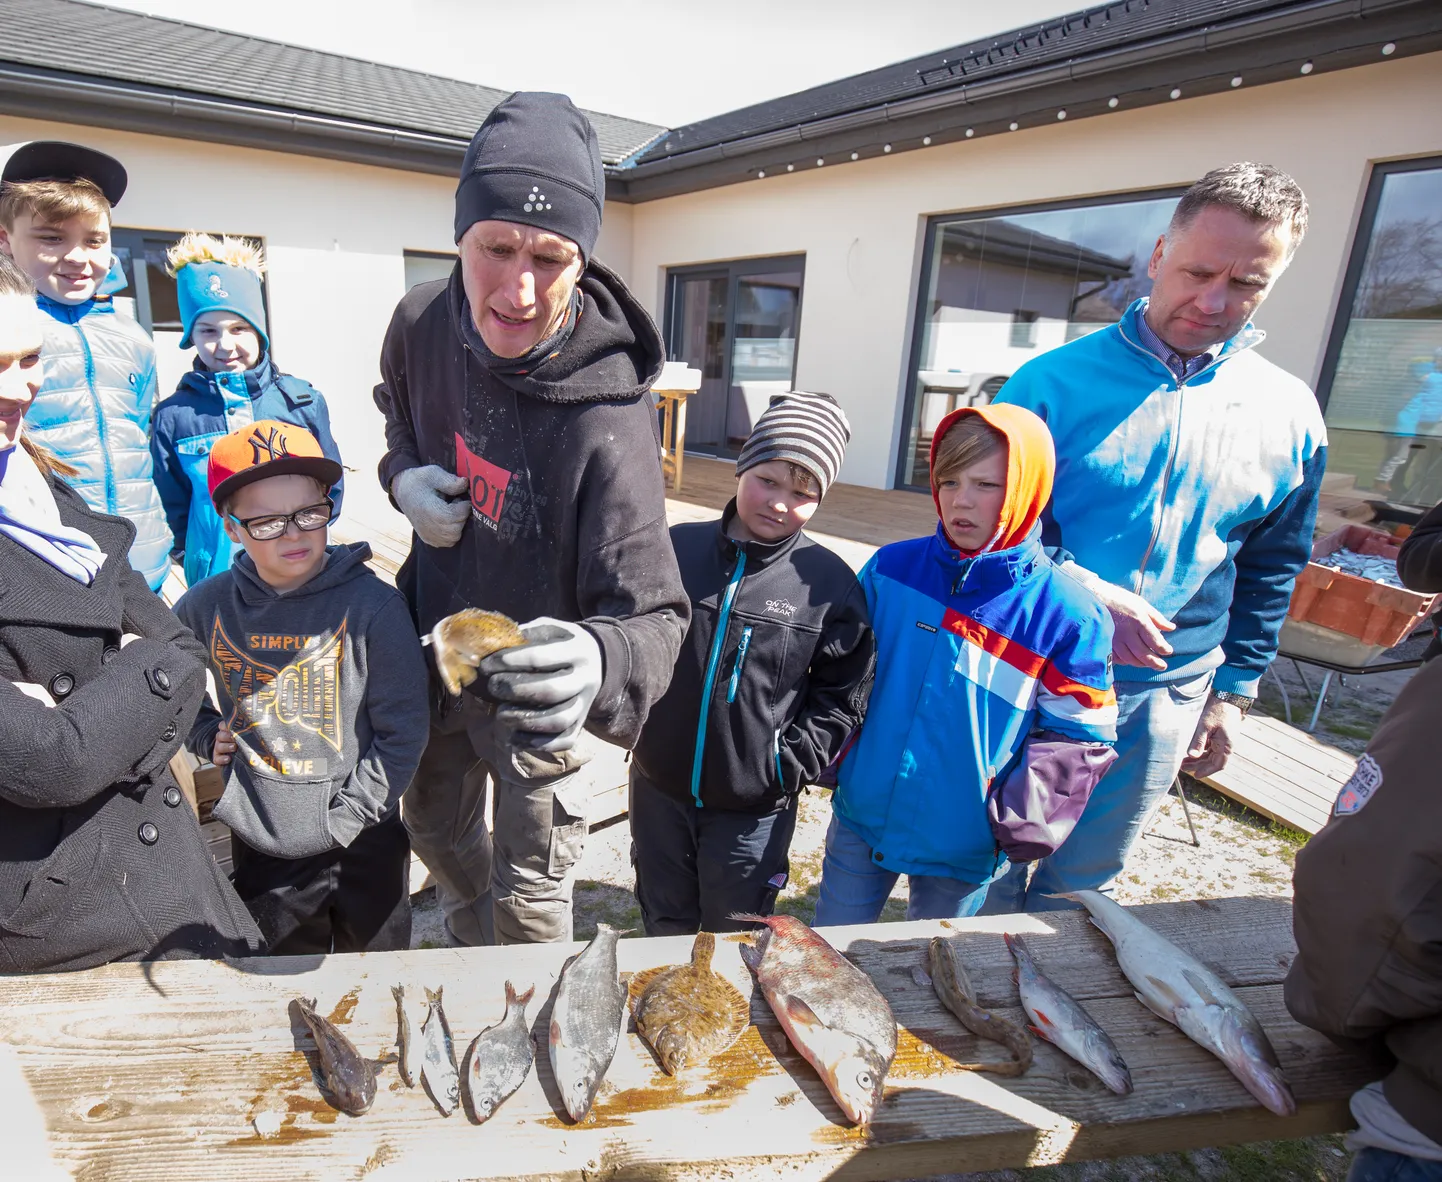 Soovituslike normide järgimisega võib tekkida probleeme kaluritel. Samuti peaks pisut ettevaatlikum olema suuremate räimede söömisega. Illustratiivsel pildil tutvustab Raio Piiroja Ülejõe põhikooli lastele Läänemere kalu.